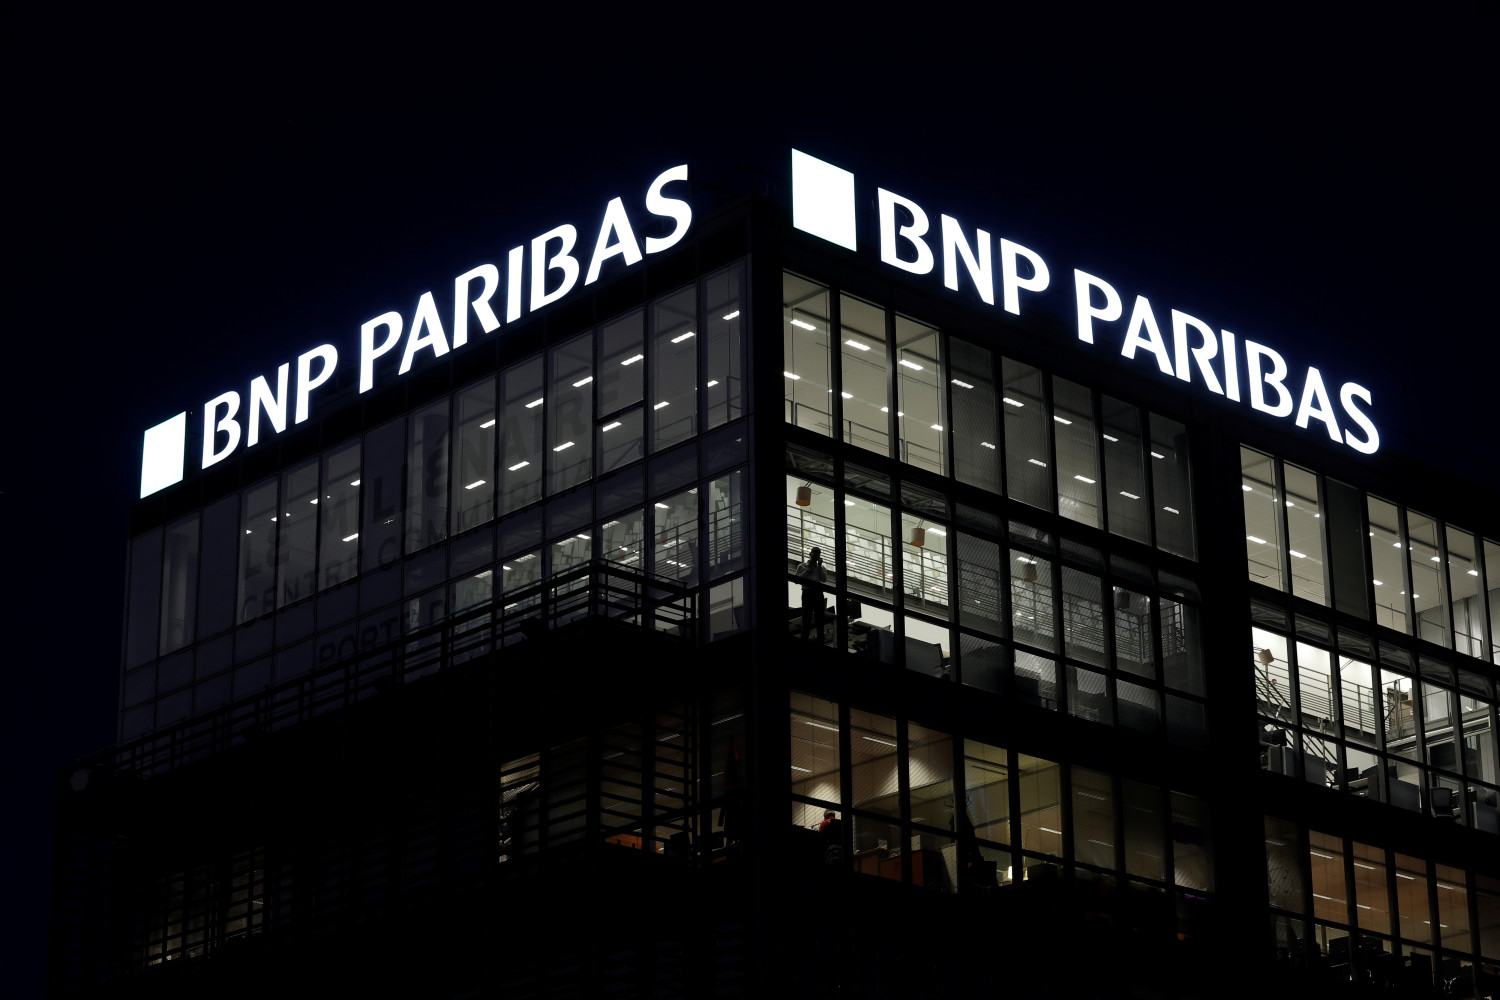 photo d archives d un logo sur une agence bancaire bnp paribas a paris 